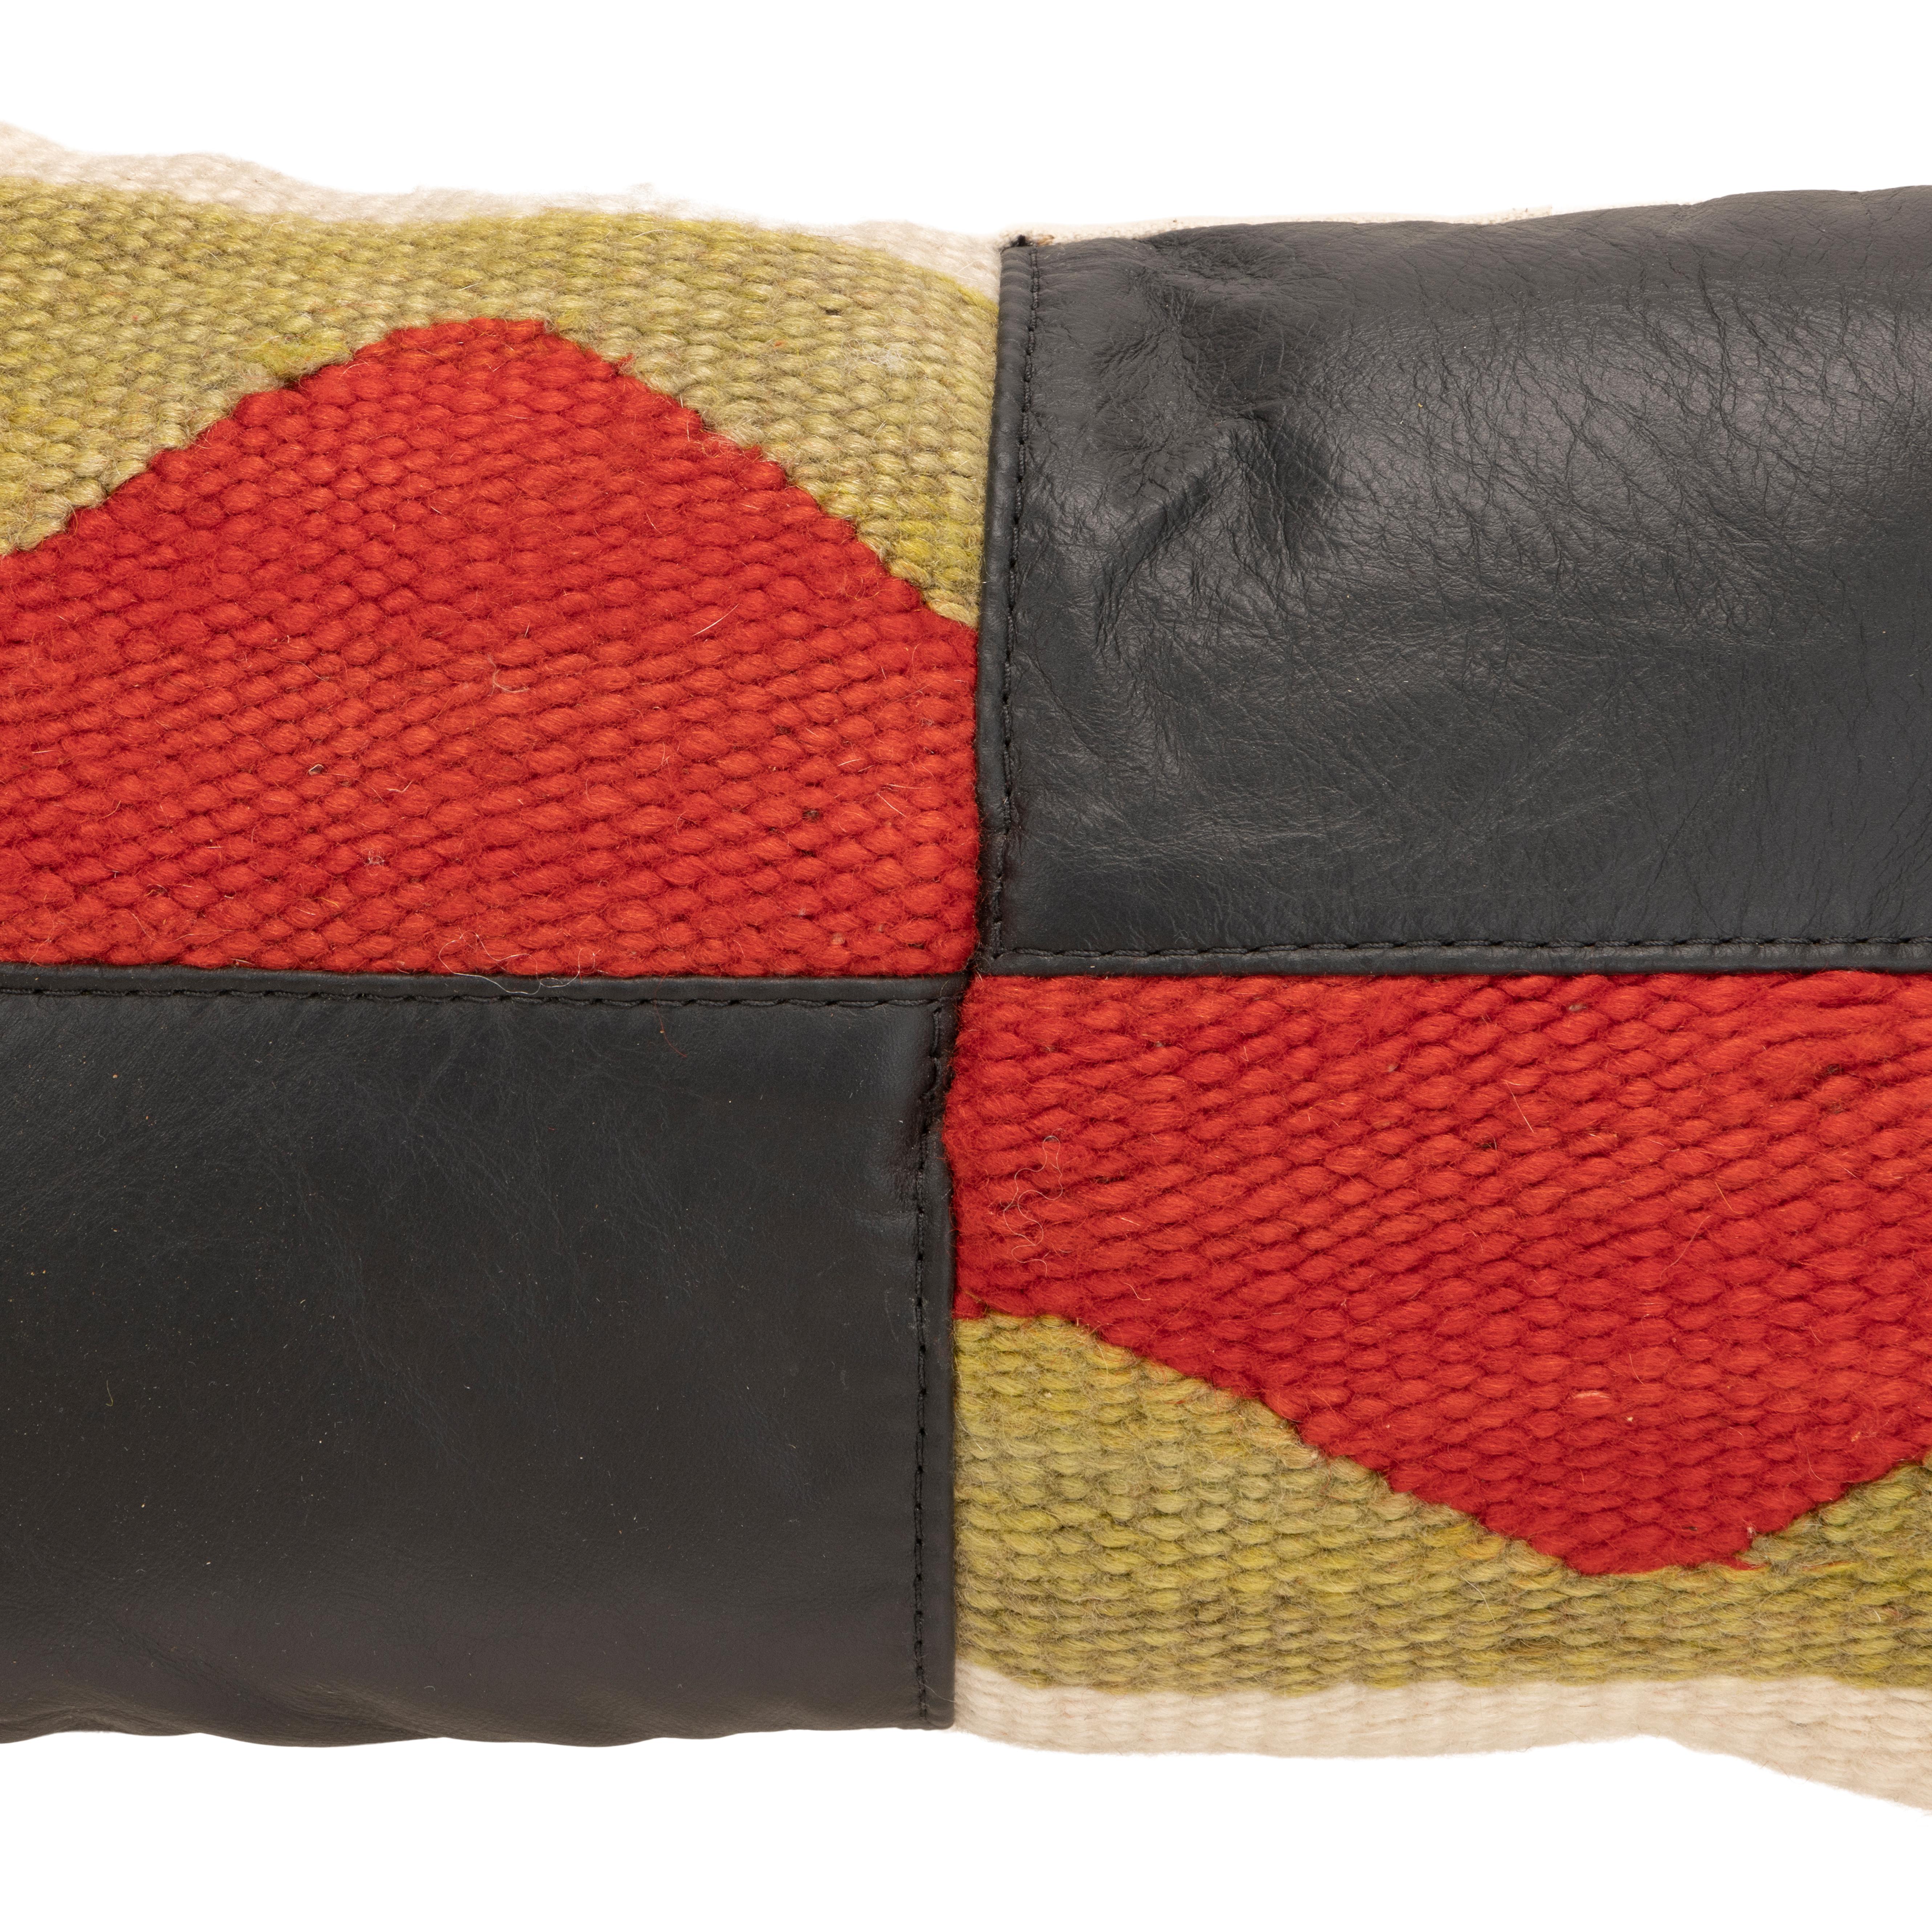 Navajo-Kissen für den Übergang. Handgefertigtes Kissen mit Vorderseite aus kariertem Navajo-Gewebe aus den 1880er Jahren und dunklem Leder. Mit Leinwand hinterlegt. Mit natürlich gefärbten Farben in Creme, Rot, Braun und Grün. Die Weberei stammt aus